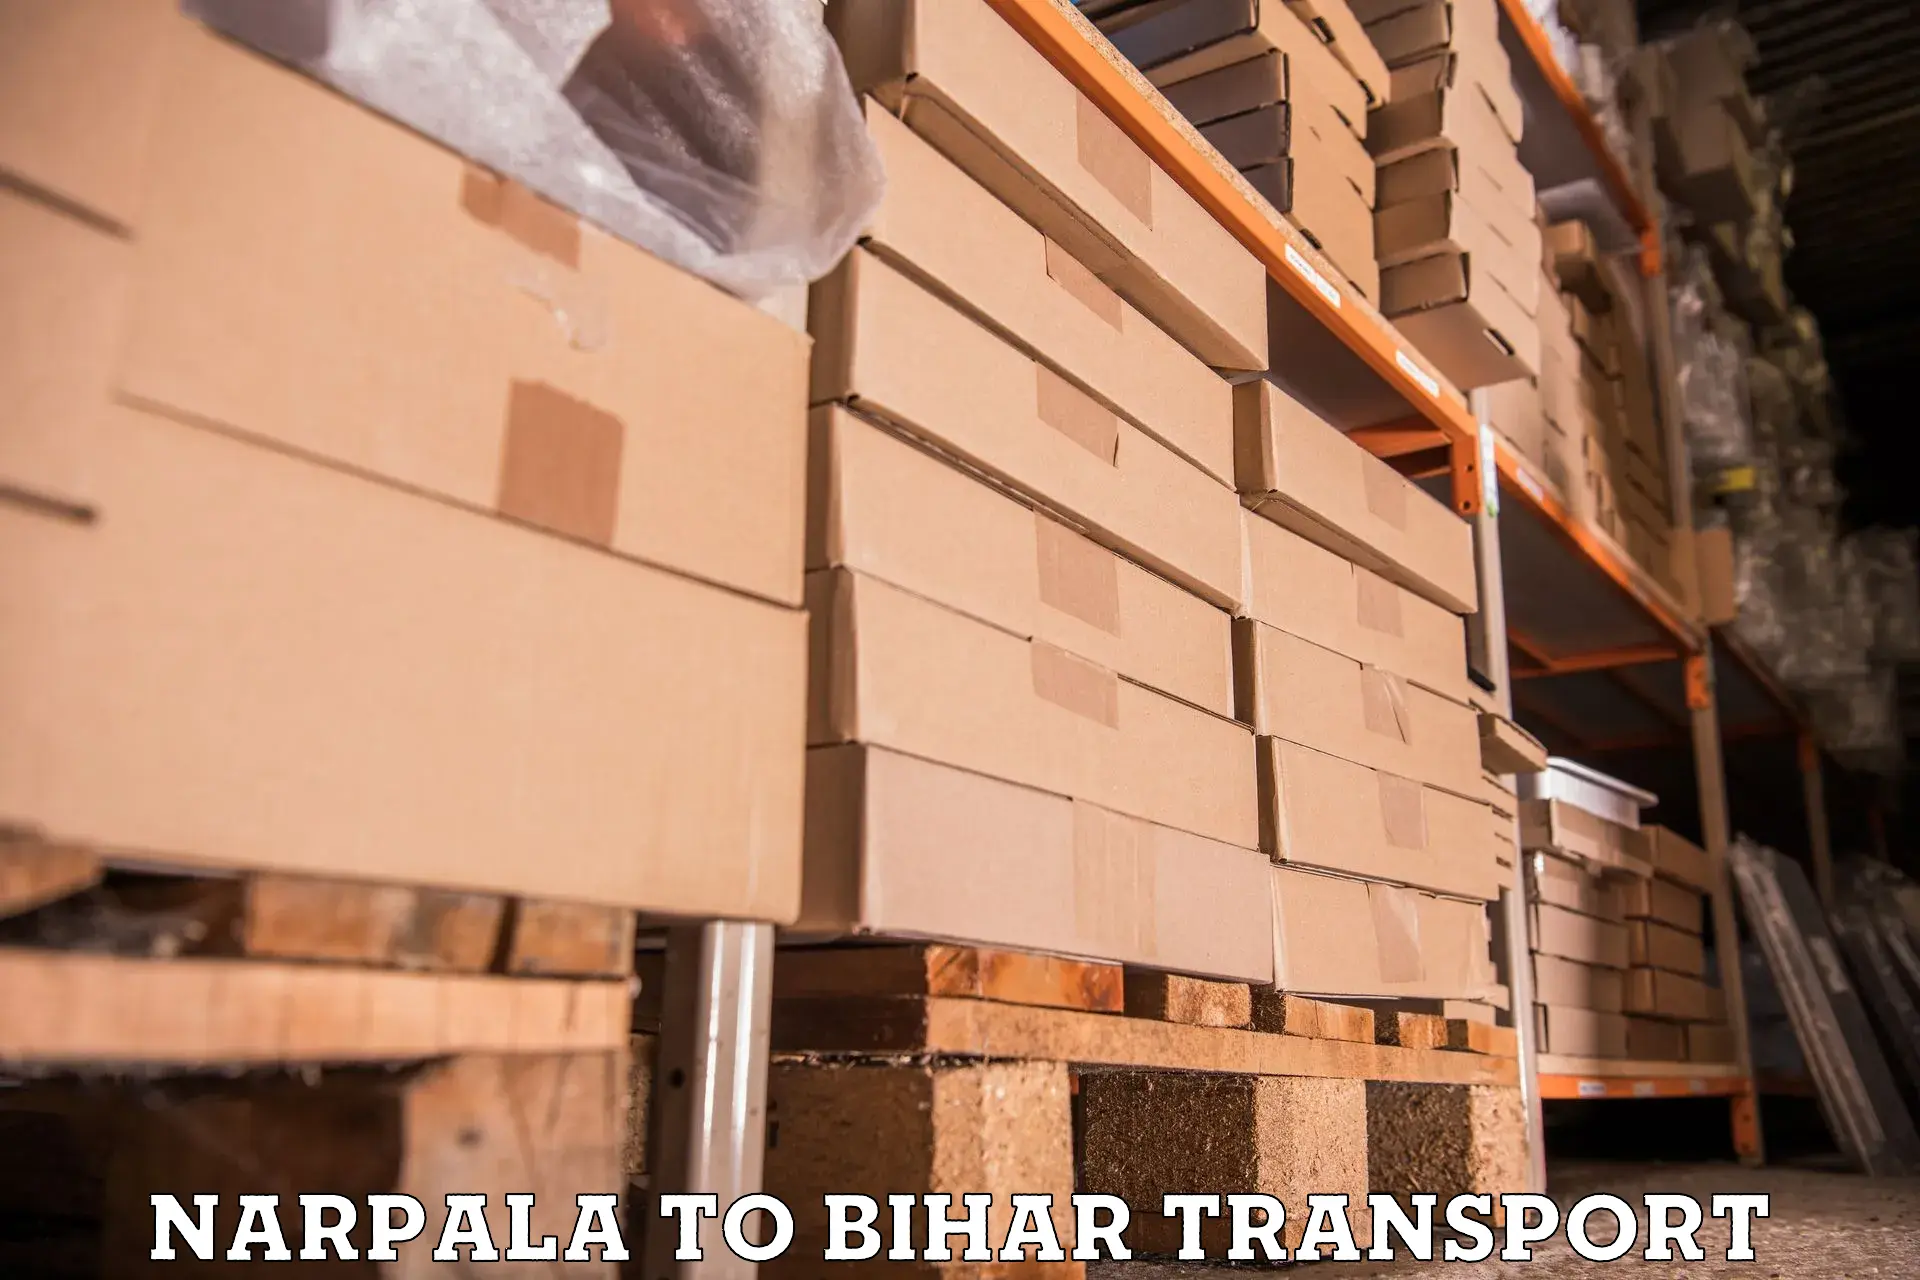 Bike transport service Narpala to Bihar